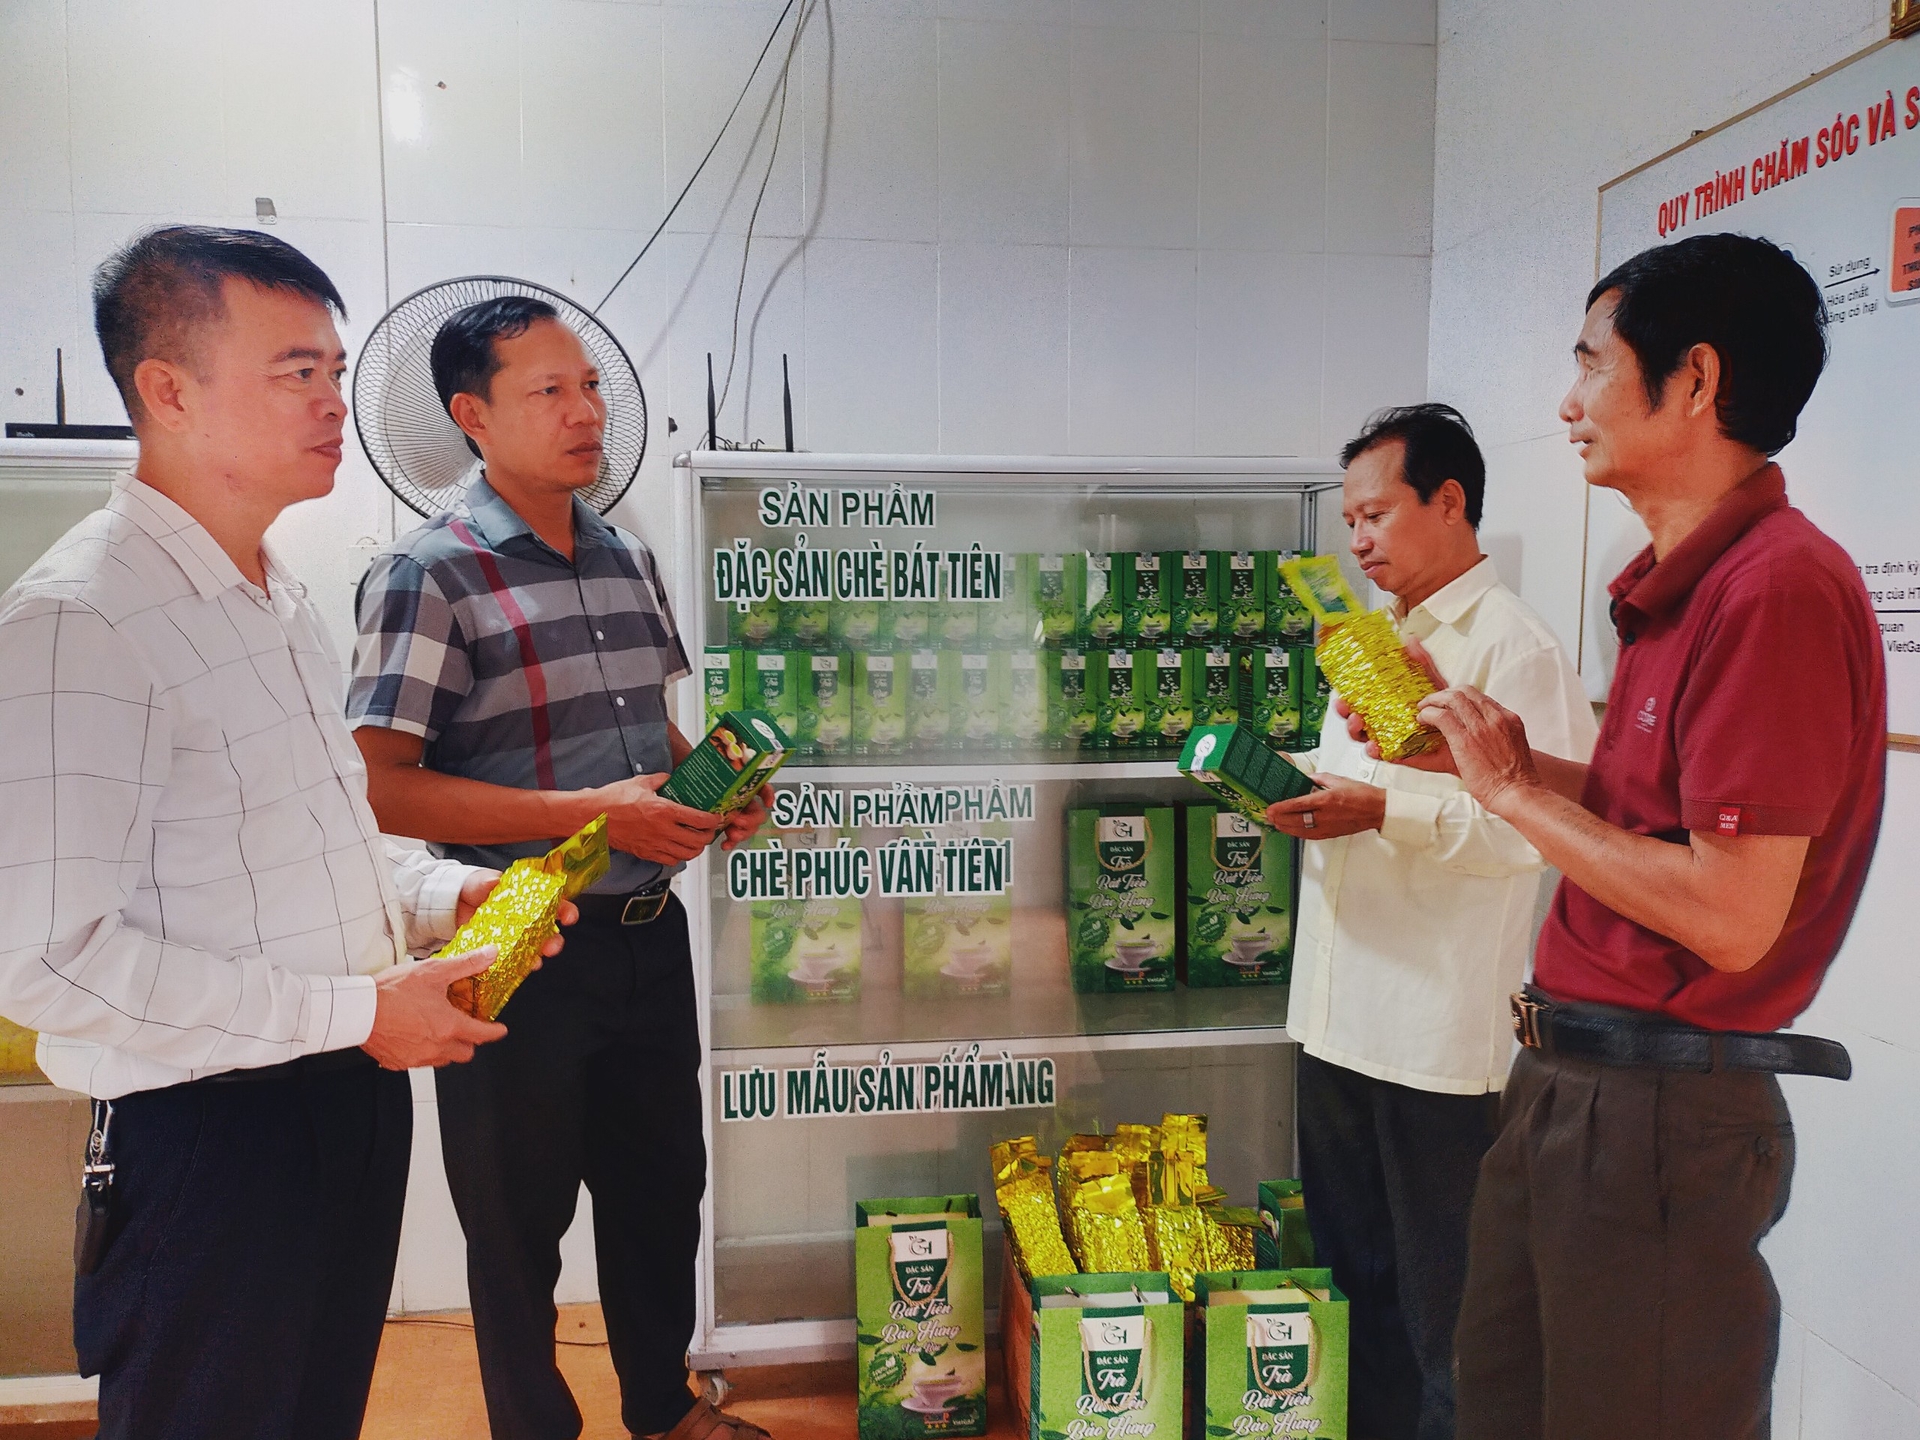 Hiện HTX Chè xanh chất lượng cao xã Bảo Hưng đã có 2 sản phẩm trà Bát Tiên đạt tiêu chuẩn OCOP cấp tỉnh. Ảnh: Hải Đăng.